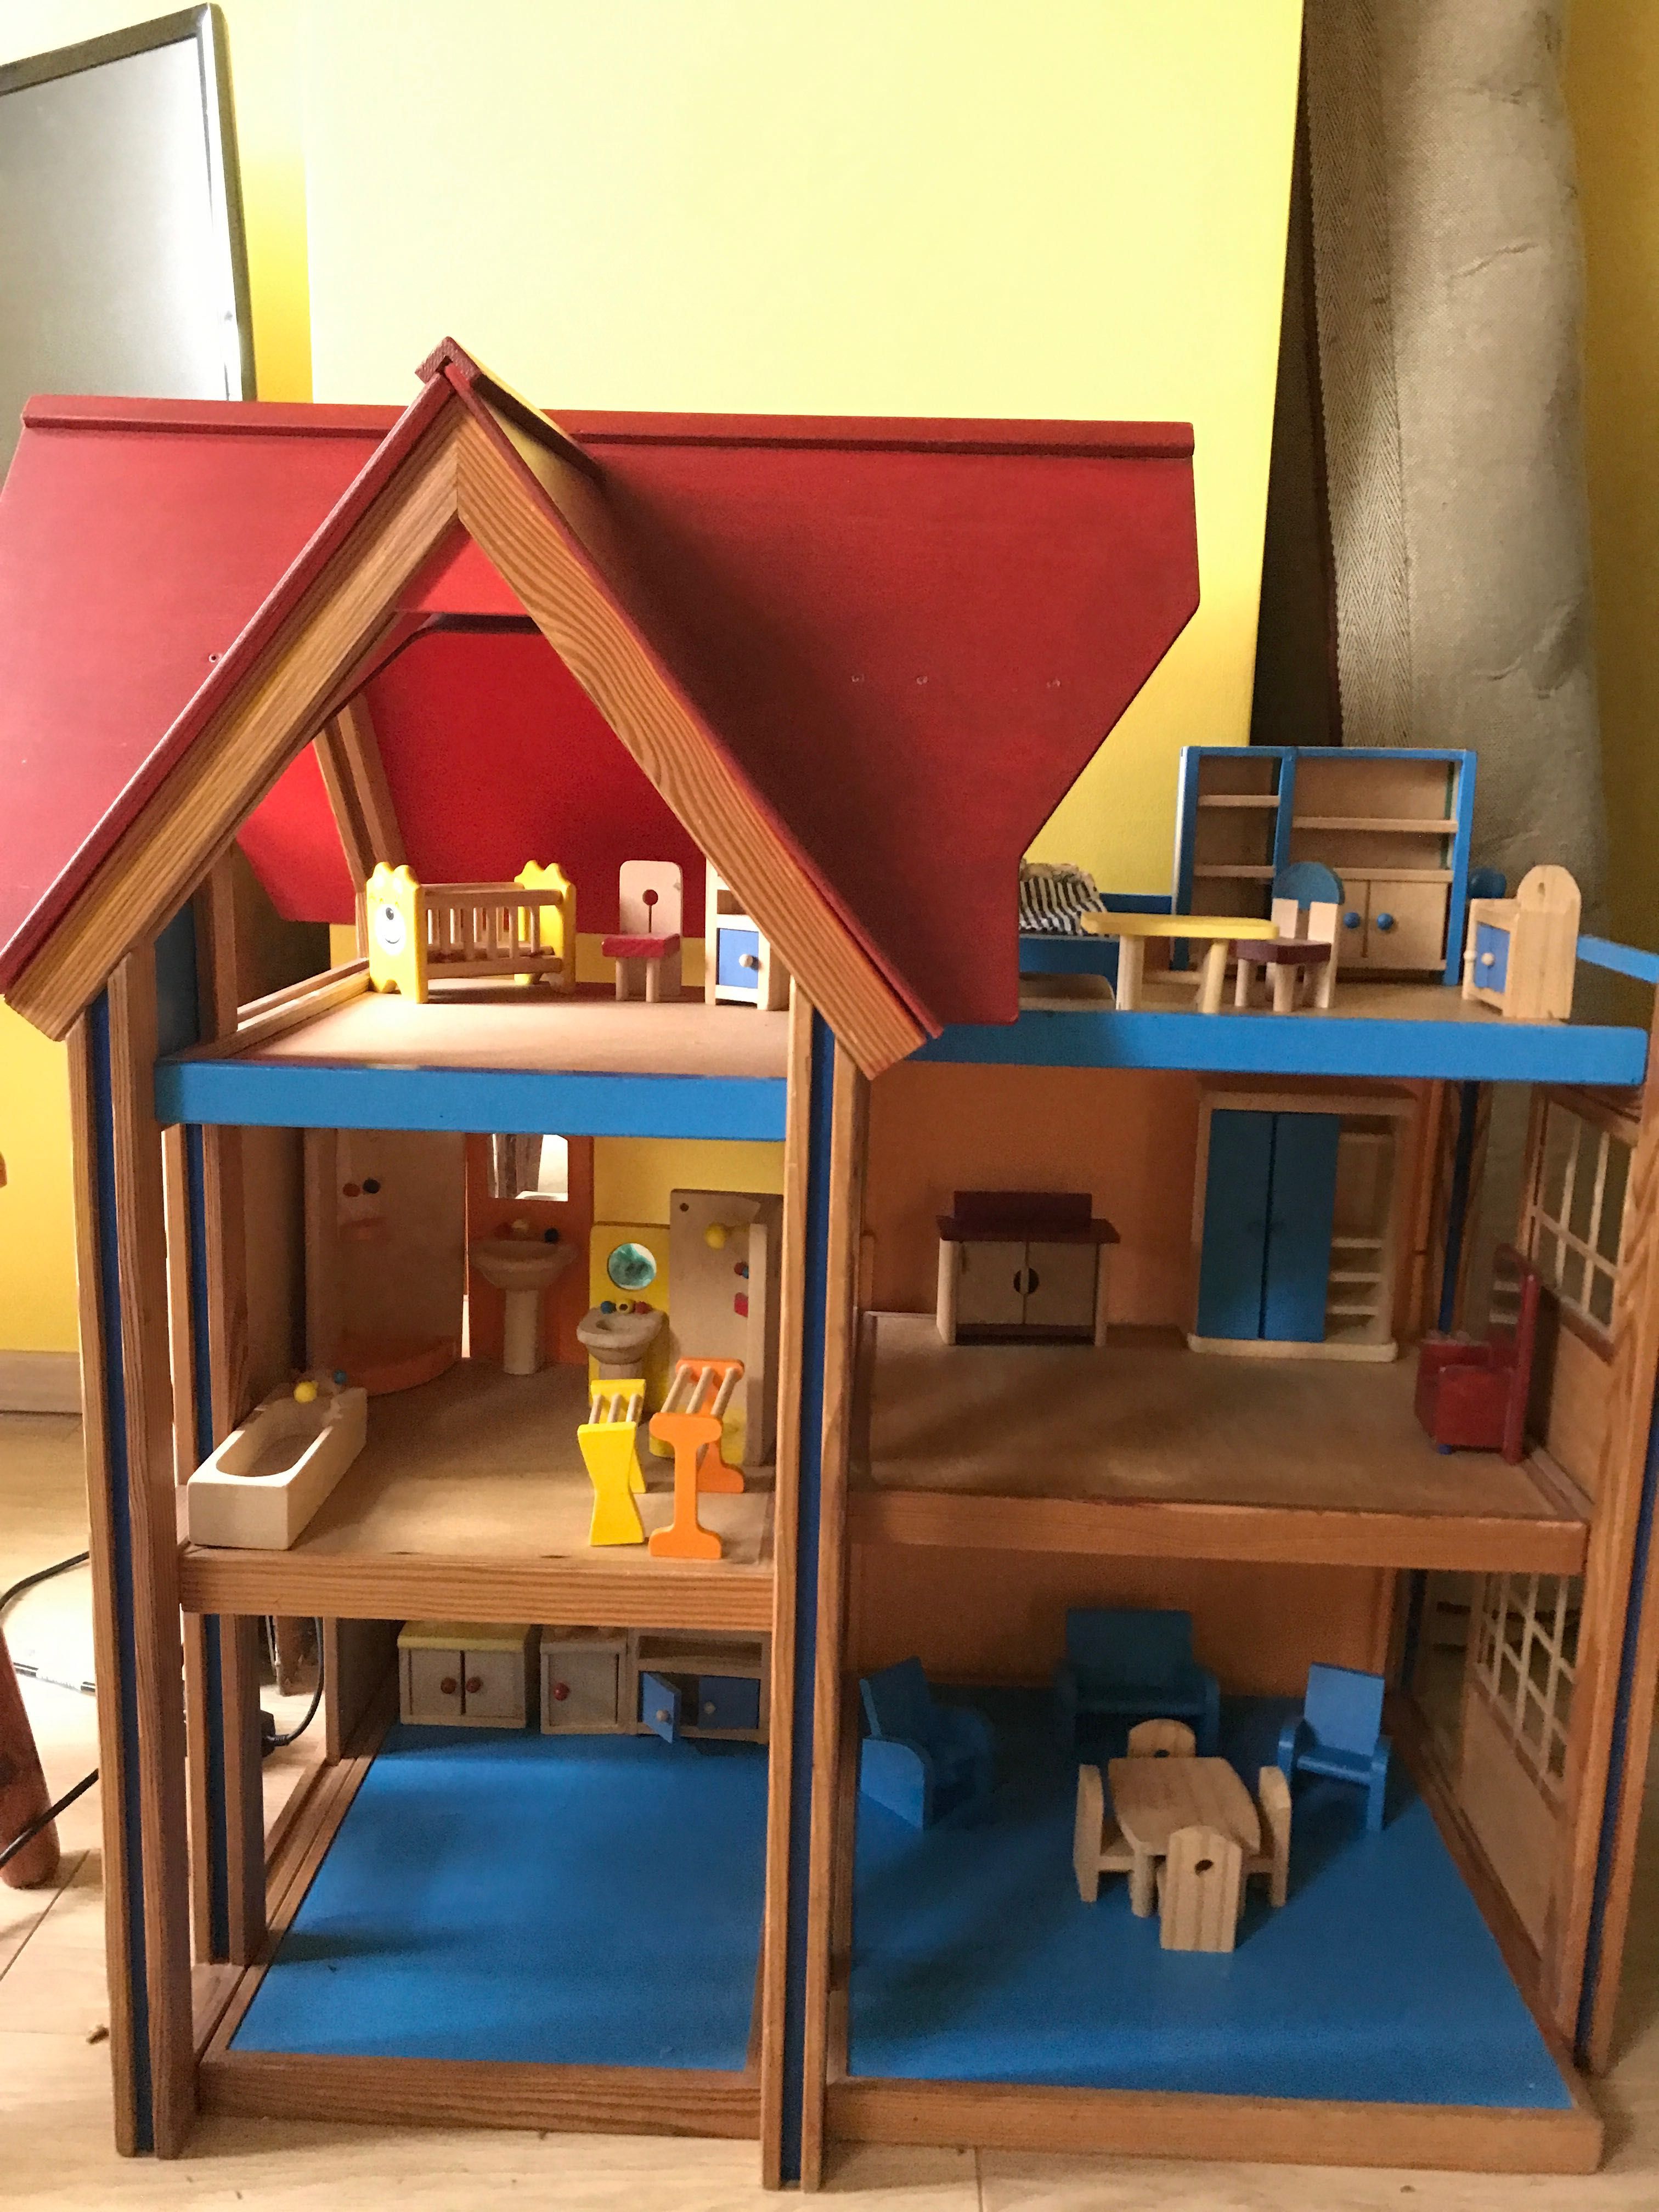 Ogromny domek dla lalek z mebelkami, drewniany